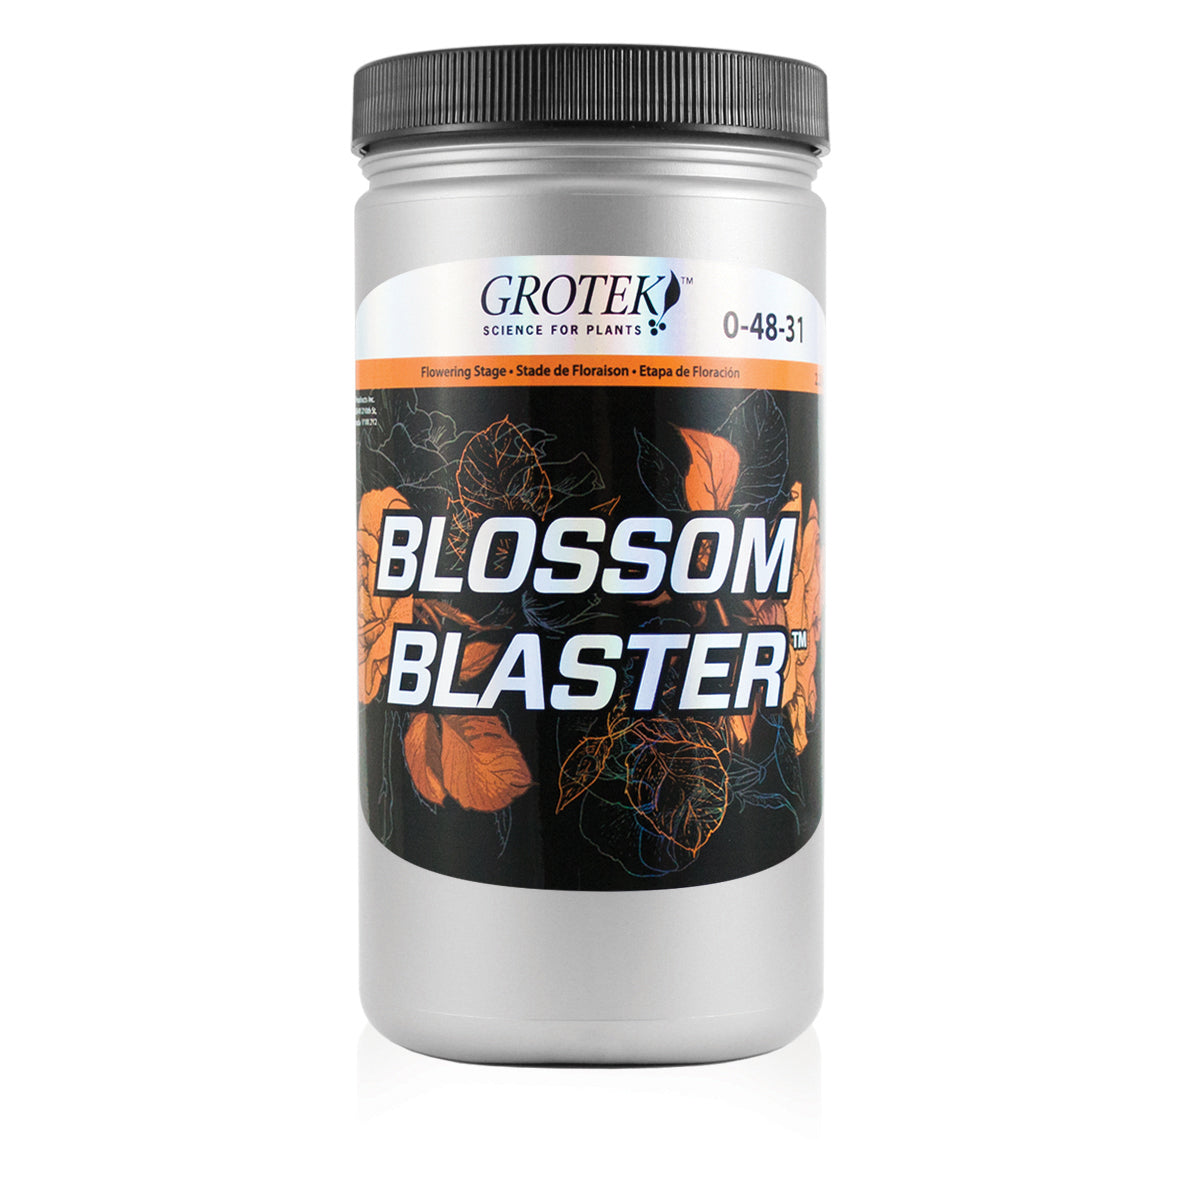 Grotek Blossom Blaster 1 kg